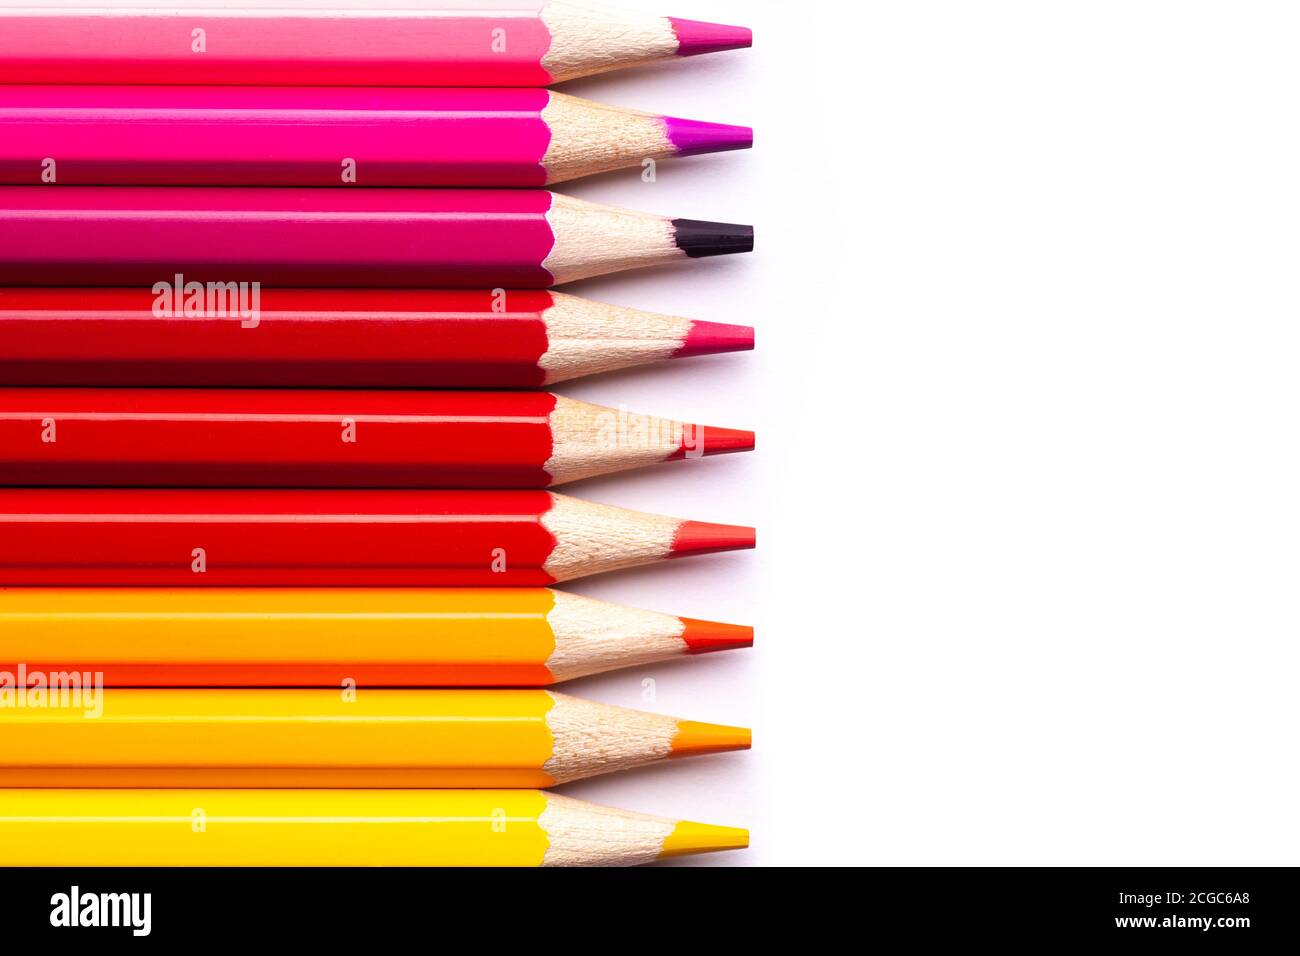 matite di legno multicolore in tonalità rosse su sfondo bianco isolato, mock up, orizzontalmente Foto Stock